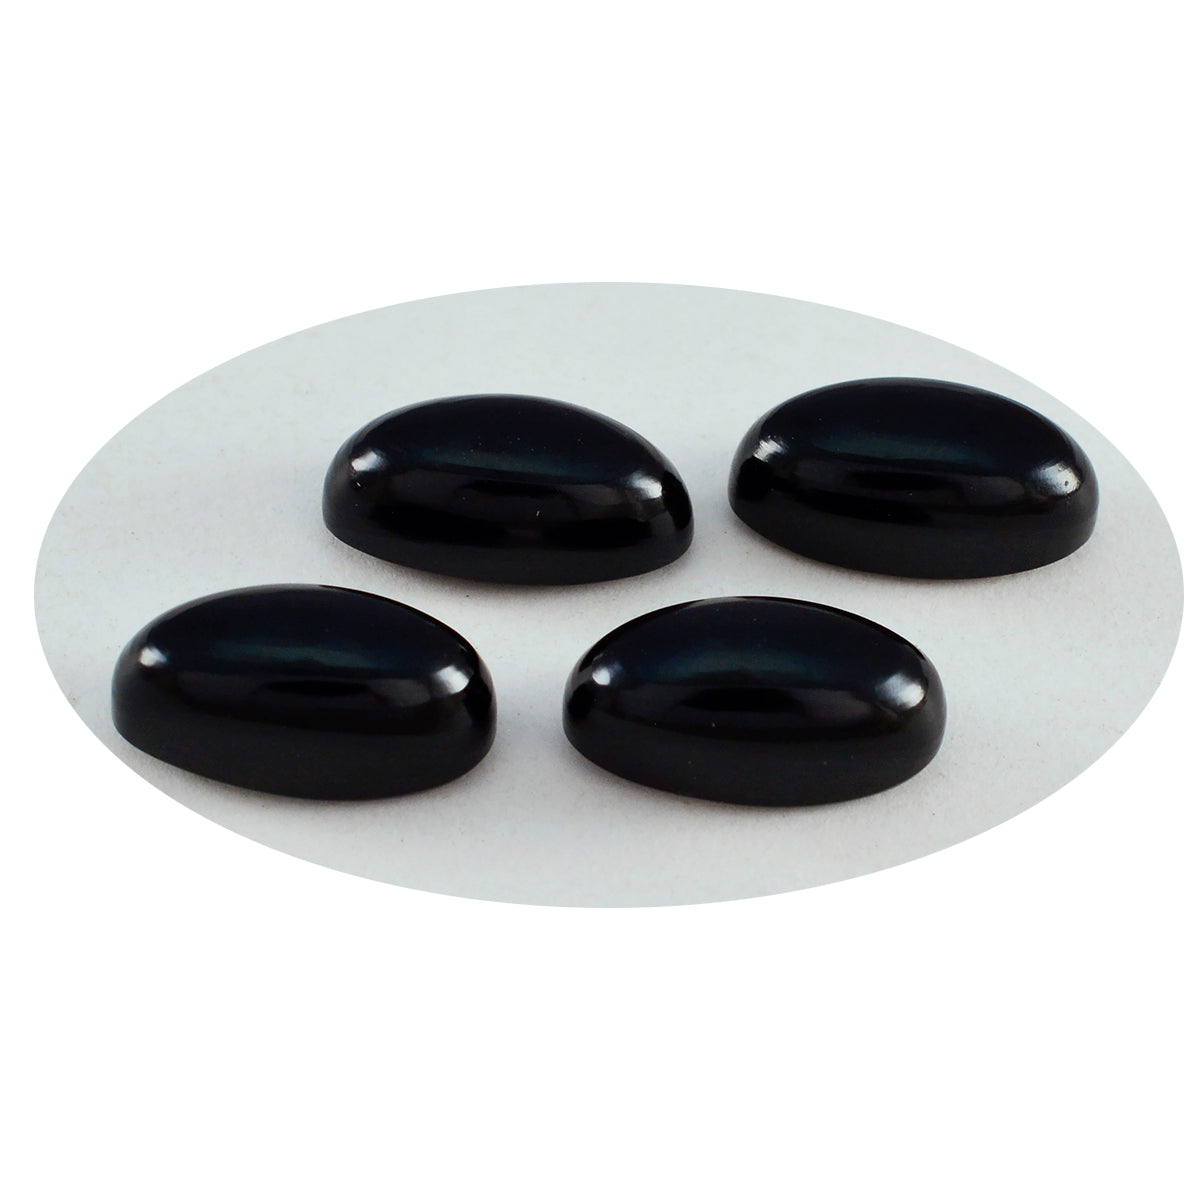 Riyogems 1 pieza cabujón de ónix negro 7x9 mm forma ovalada gemas sueltas de calidad asombrosa